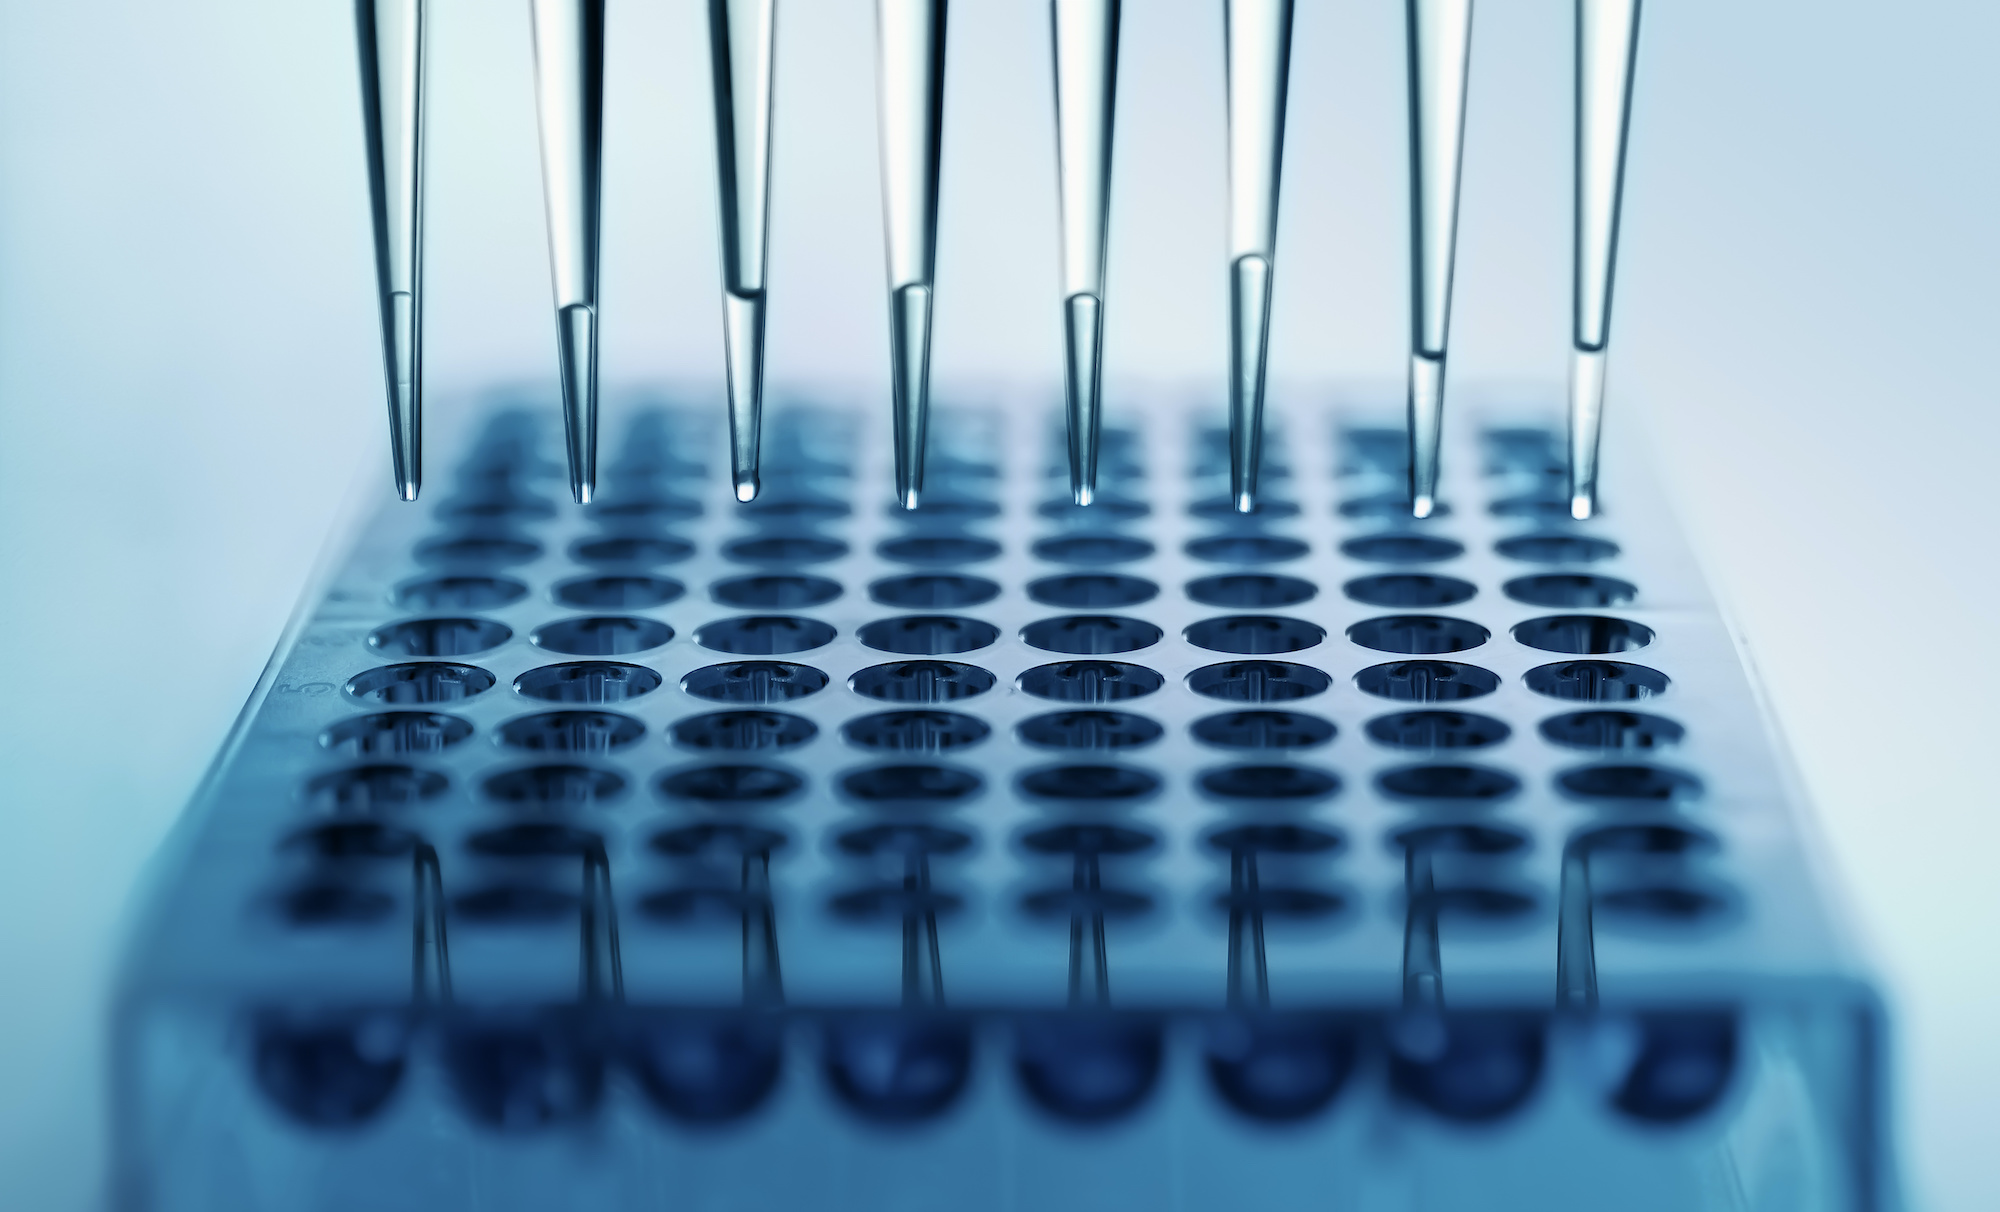 La microfluidique permet de miniaturiser les expériences biologiques et chimiques. © angellodeco, Adobe Stock